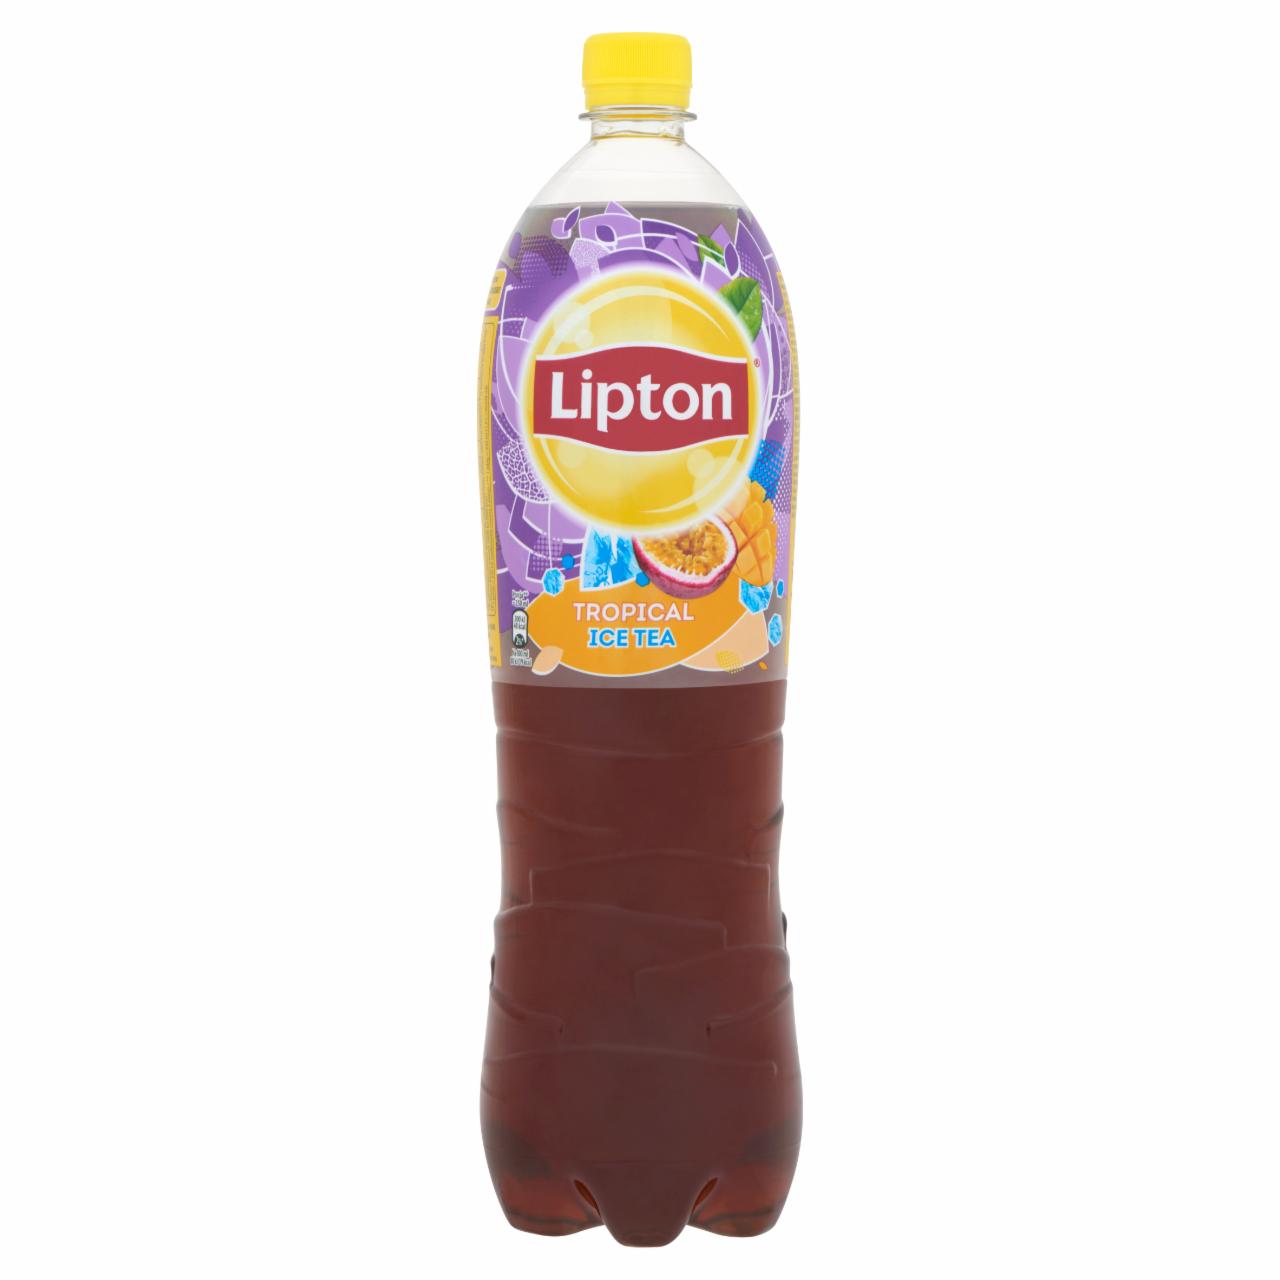 Képek - Lipton Ice Tea Tropical, tropical ízű csökkentett energiatartalmú 1,5 l